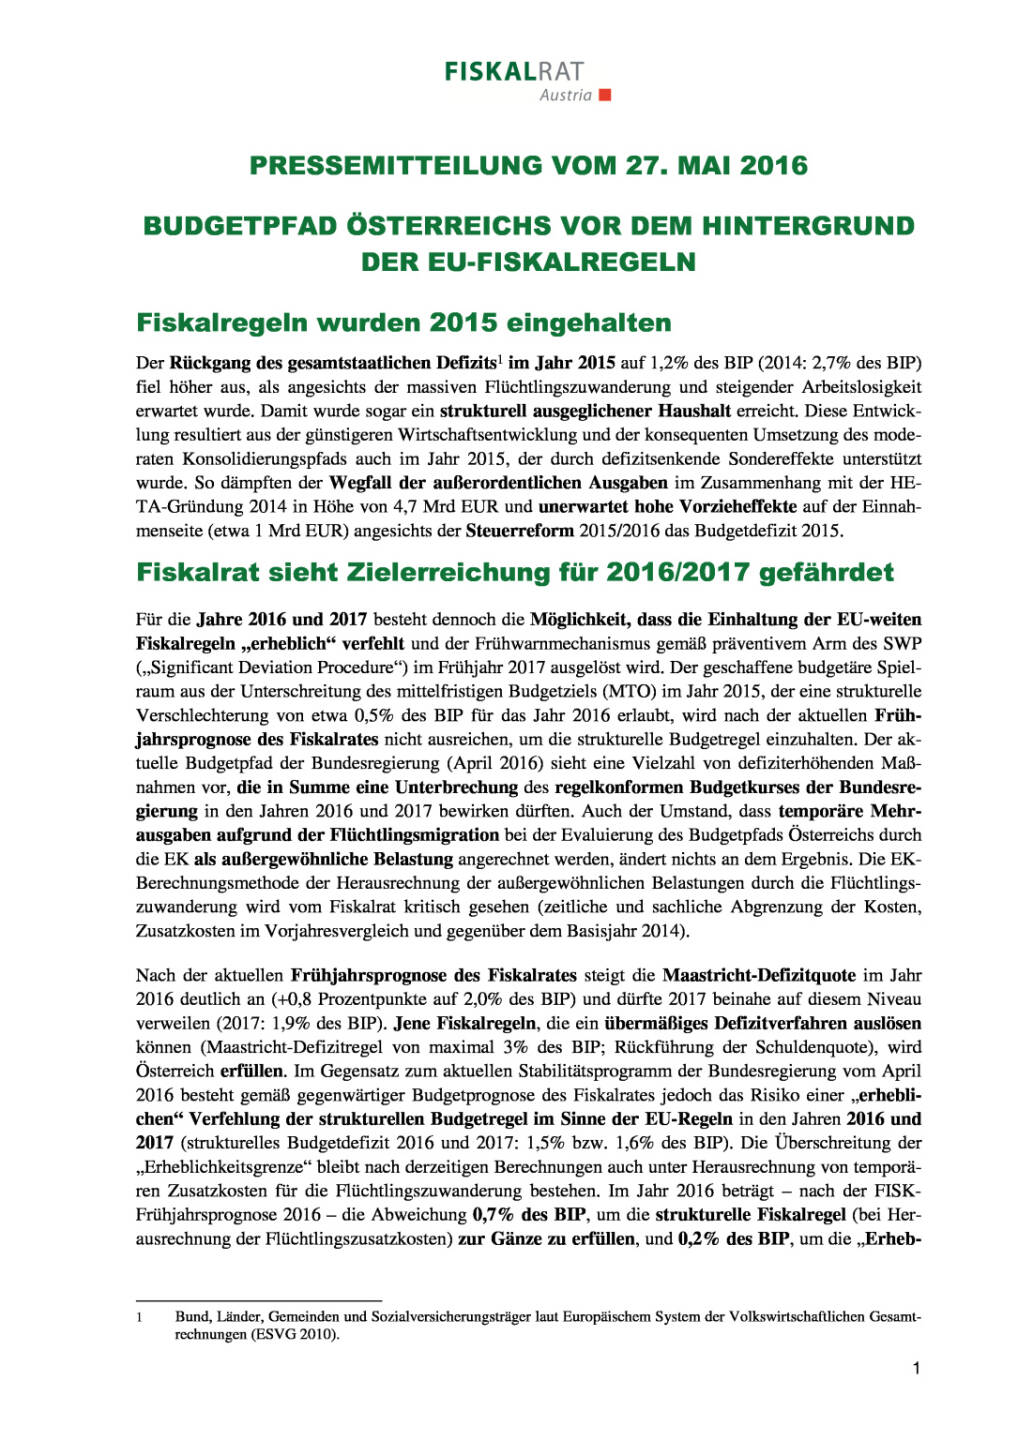 Fiskalrat: „Budgetpfad Österreichs vor dem Hintergrund der EU-Fiskalregeln, Seite 1/2, komplettes Dokument unter http://boerse-social.com/static/uploads/file_1123_fiskalrat_budgetpfad_osterreichs_vor_dem_hintergrund_der_eu-fiskalregeln.pdf